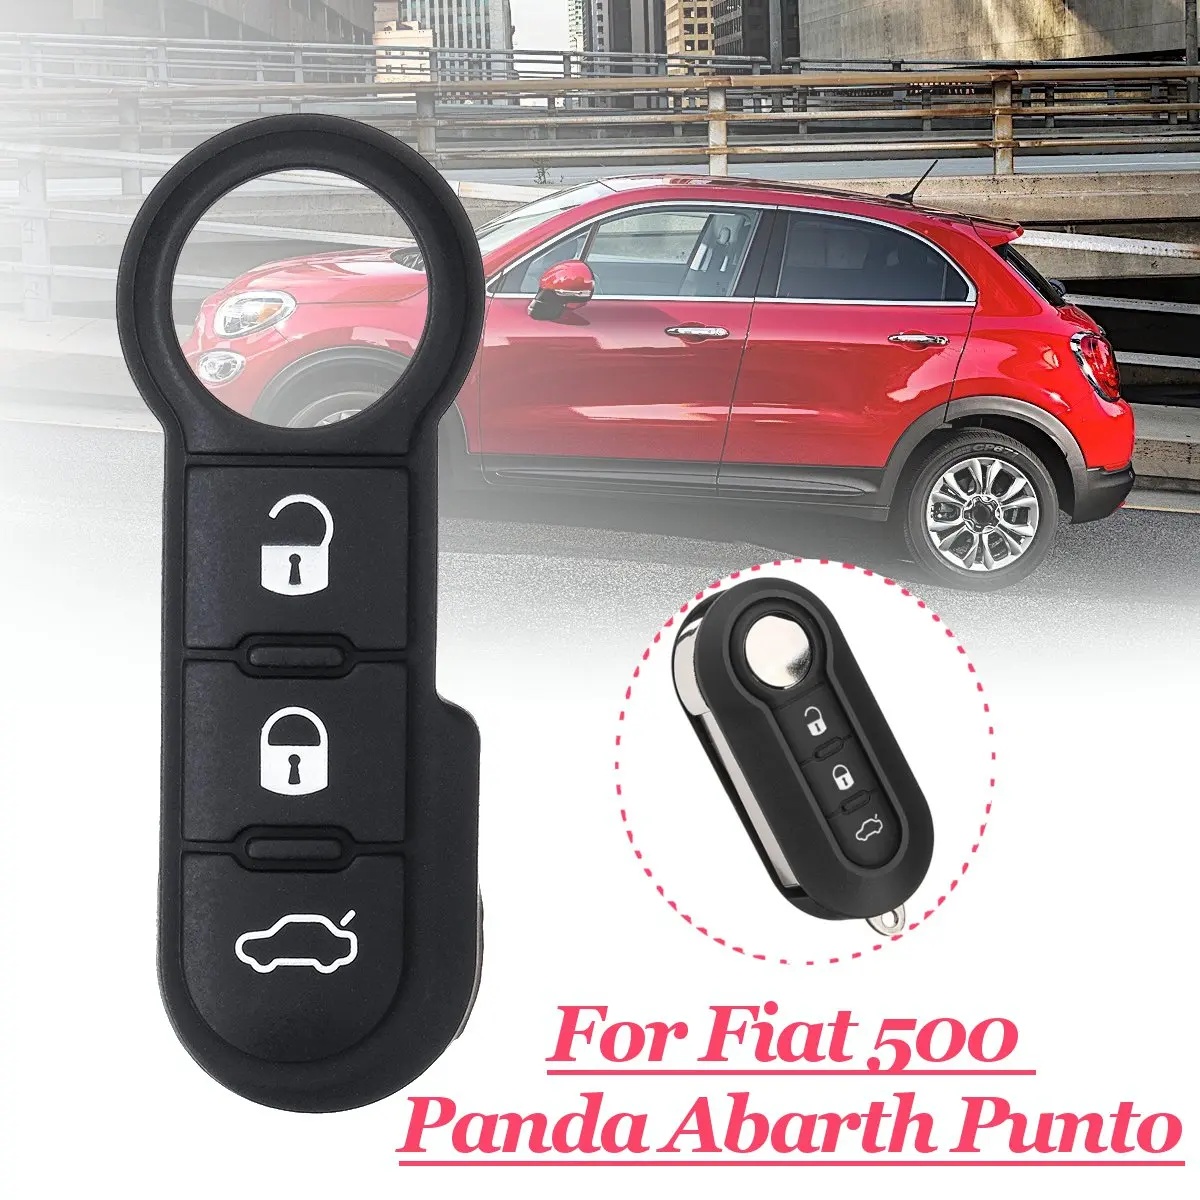 Черный резиновый 2 шт. брелок пульт дистанционного управления 3 кнопки резиновый кнопочный коврик для Fiat 500 Panda Abarth Punto 3 кнопки пульт автомобиля - Цвет: 1 x